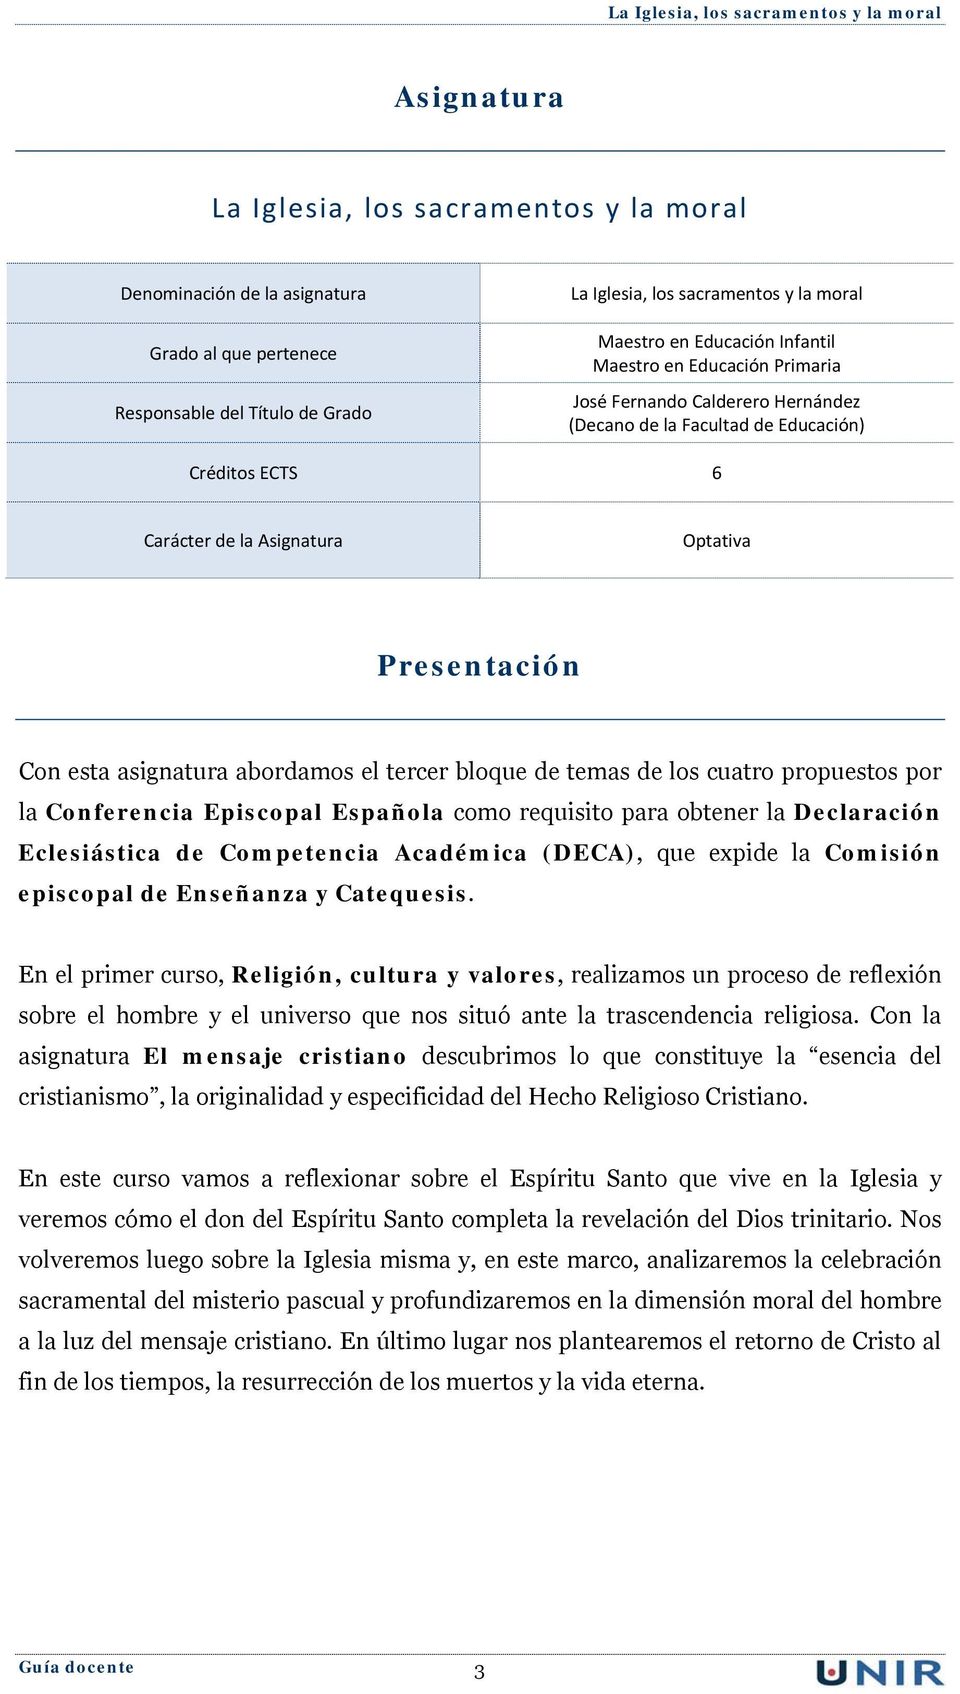 abordamos el tercer bloque de temas de los cuatro propuestos por la Conferencia Episcopal Española como requisito para obtener la Declaración Eclesiástica de Competencia Académica (DECA), que expide